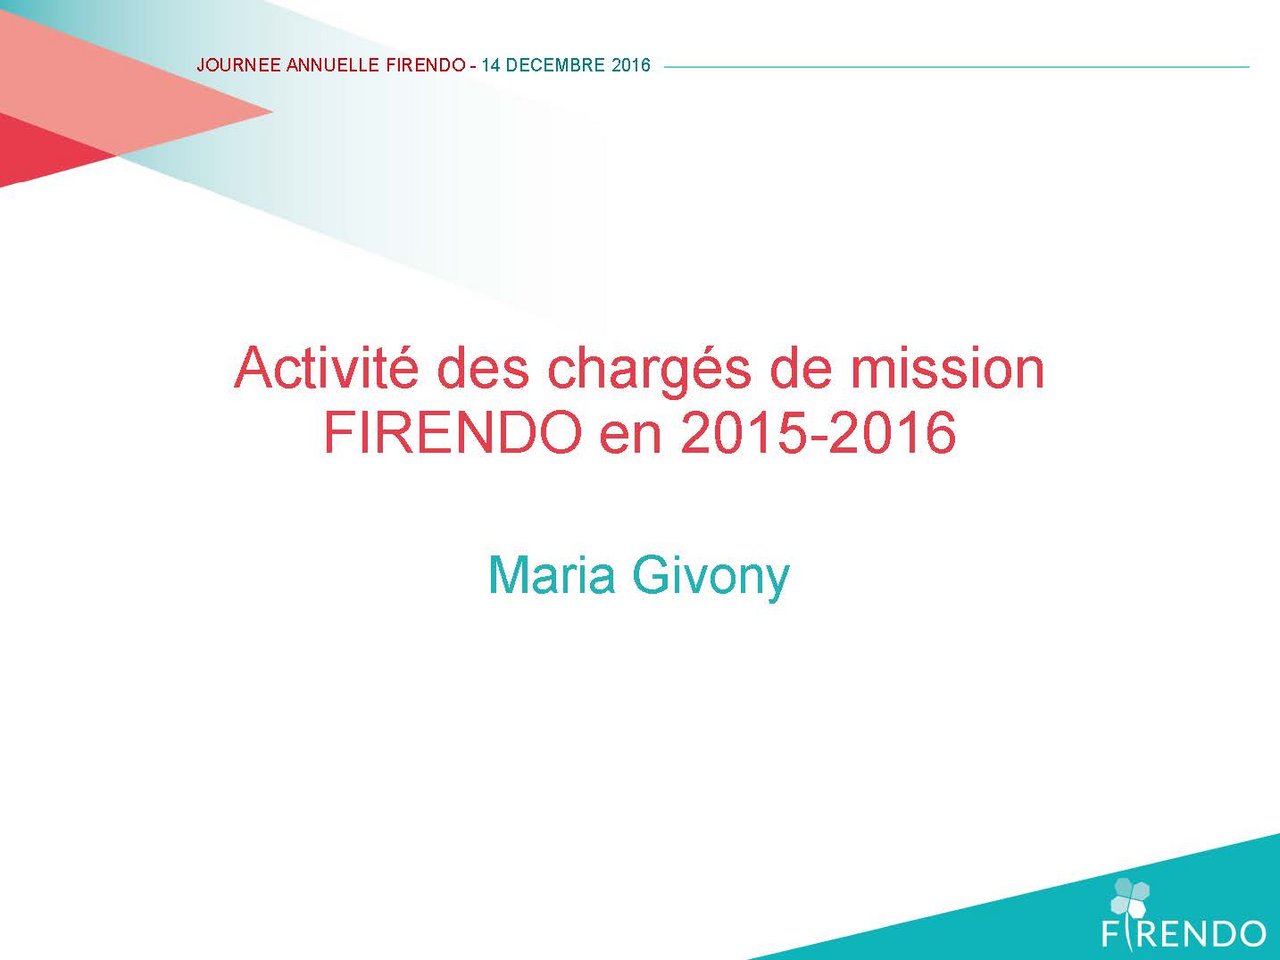 Journee Annuelle 2016 FIRENDO Maria Givony Activité 2015-2016 chargés de mission